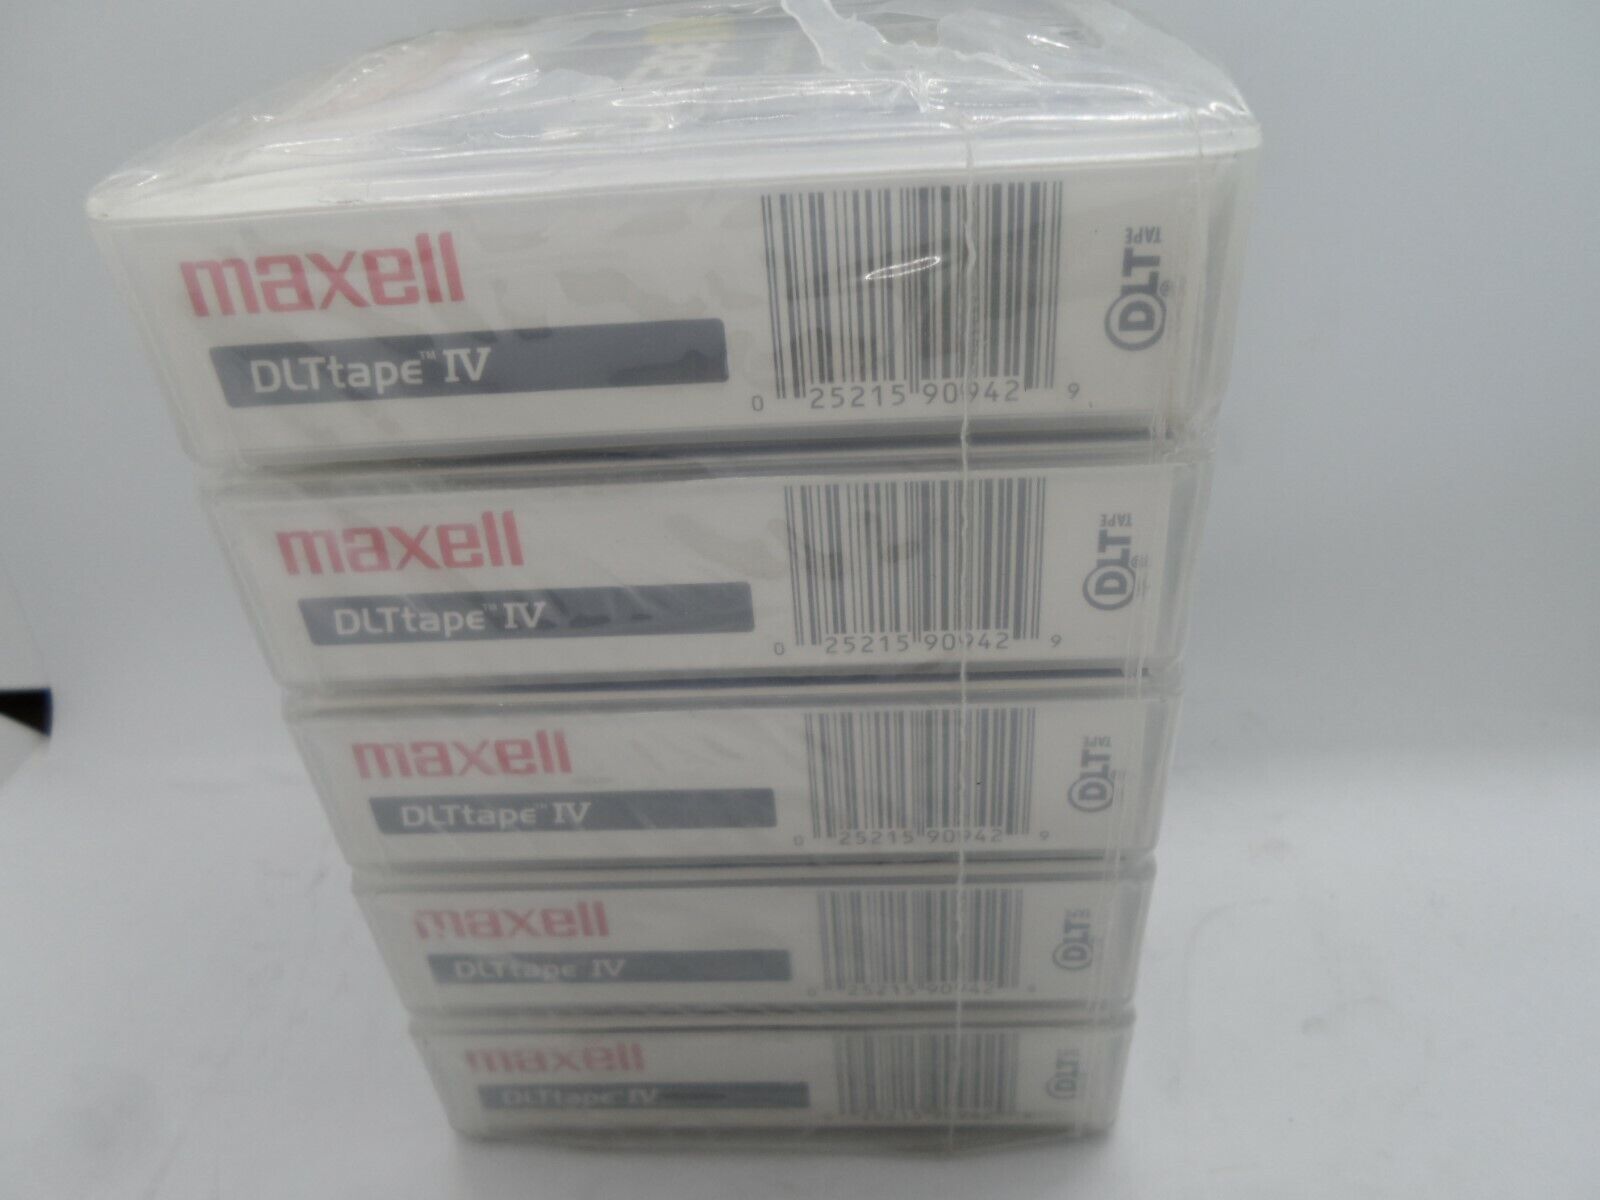 MAXELL DLTTape IV VS80 DLT1 183270  Cartridge Tape - NEW Factory Sealed Lot of 5